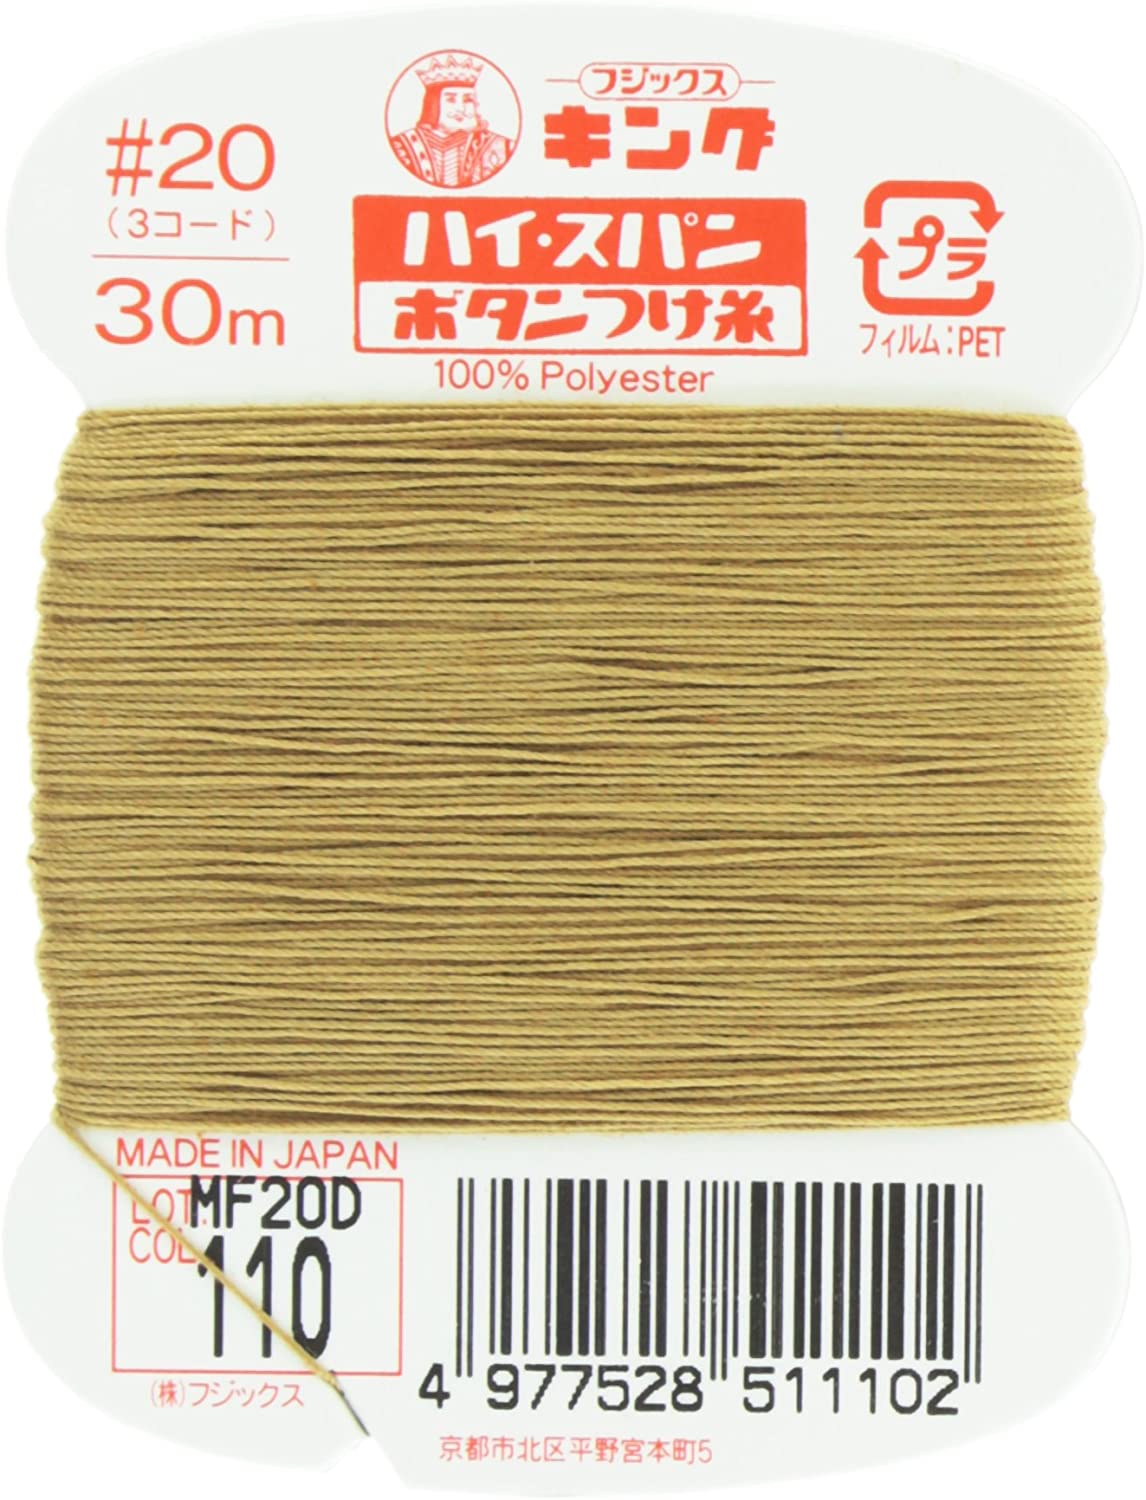 FK51-110 ハイスパンボタンつけ糸 #20 30m巻 (枚)